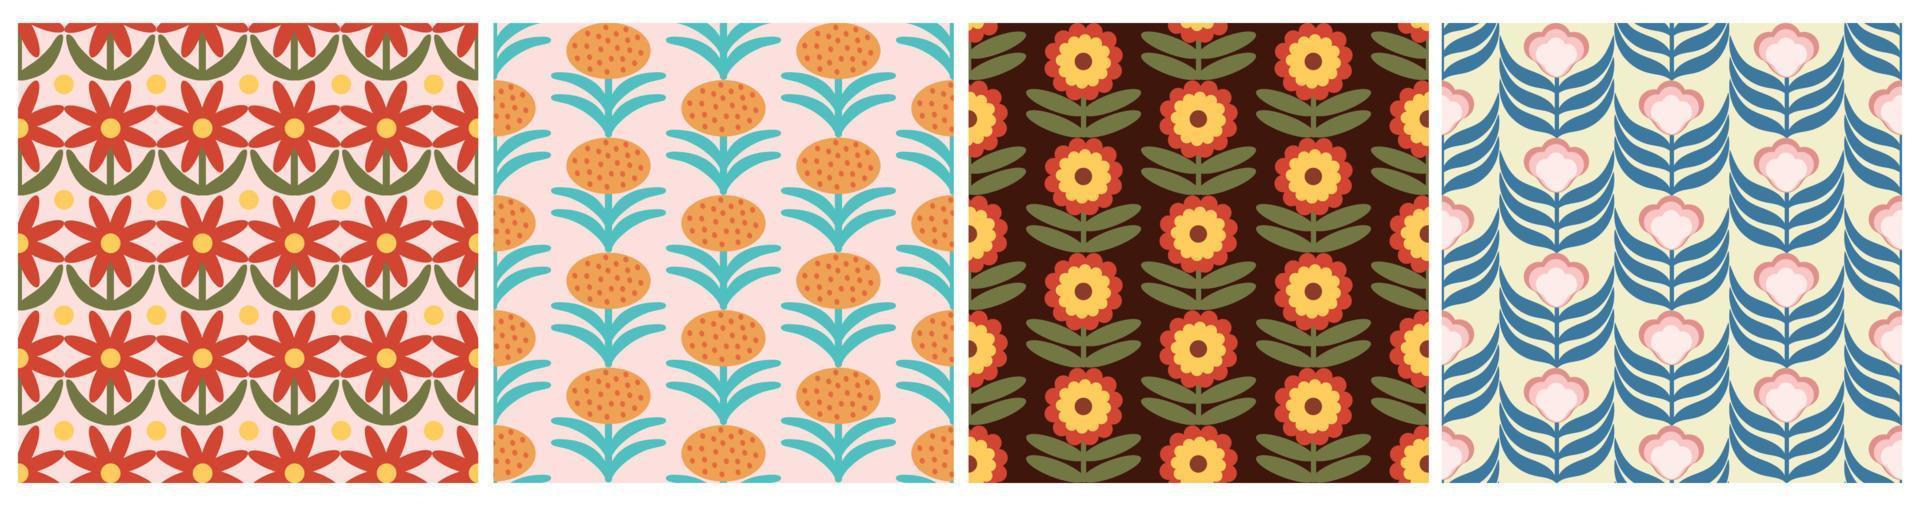 uppsättning av retro blommig mönster. 70s skraj design samling med geometrisk blommor. häftig mitten århundrade scandi sömlös vektor textur för tyg design, textil- skriva ut, omslag, omslag